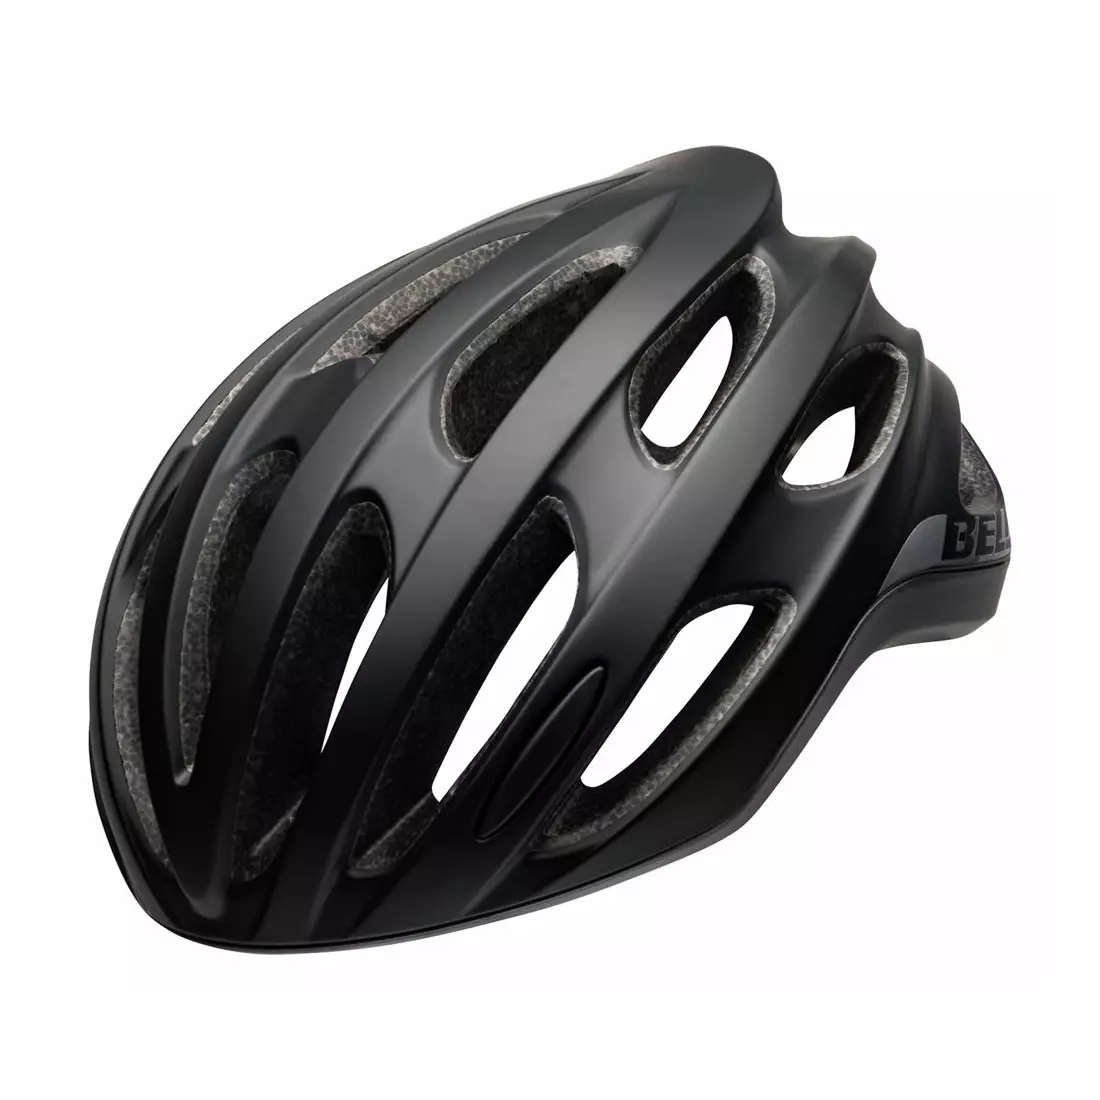 BELL FORMULA helma na silniční kolo, matte gloss black gray